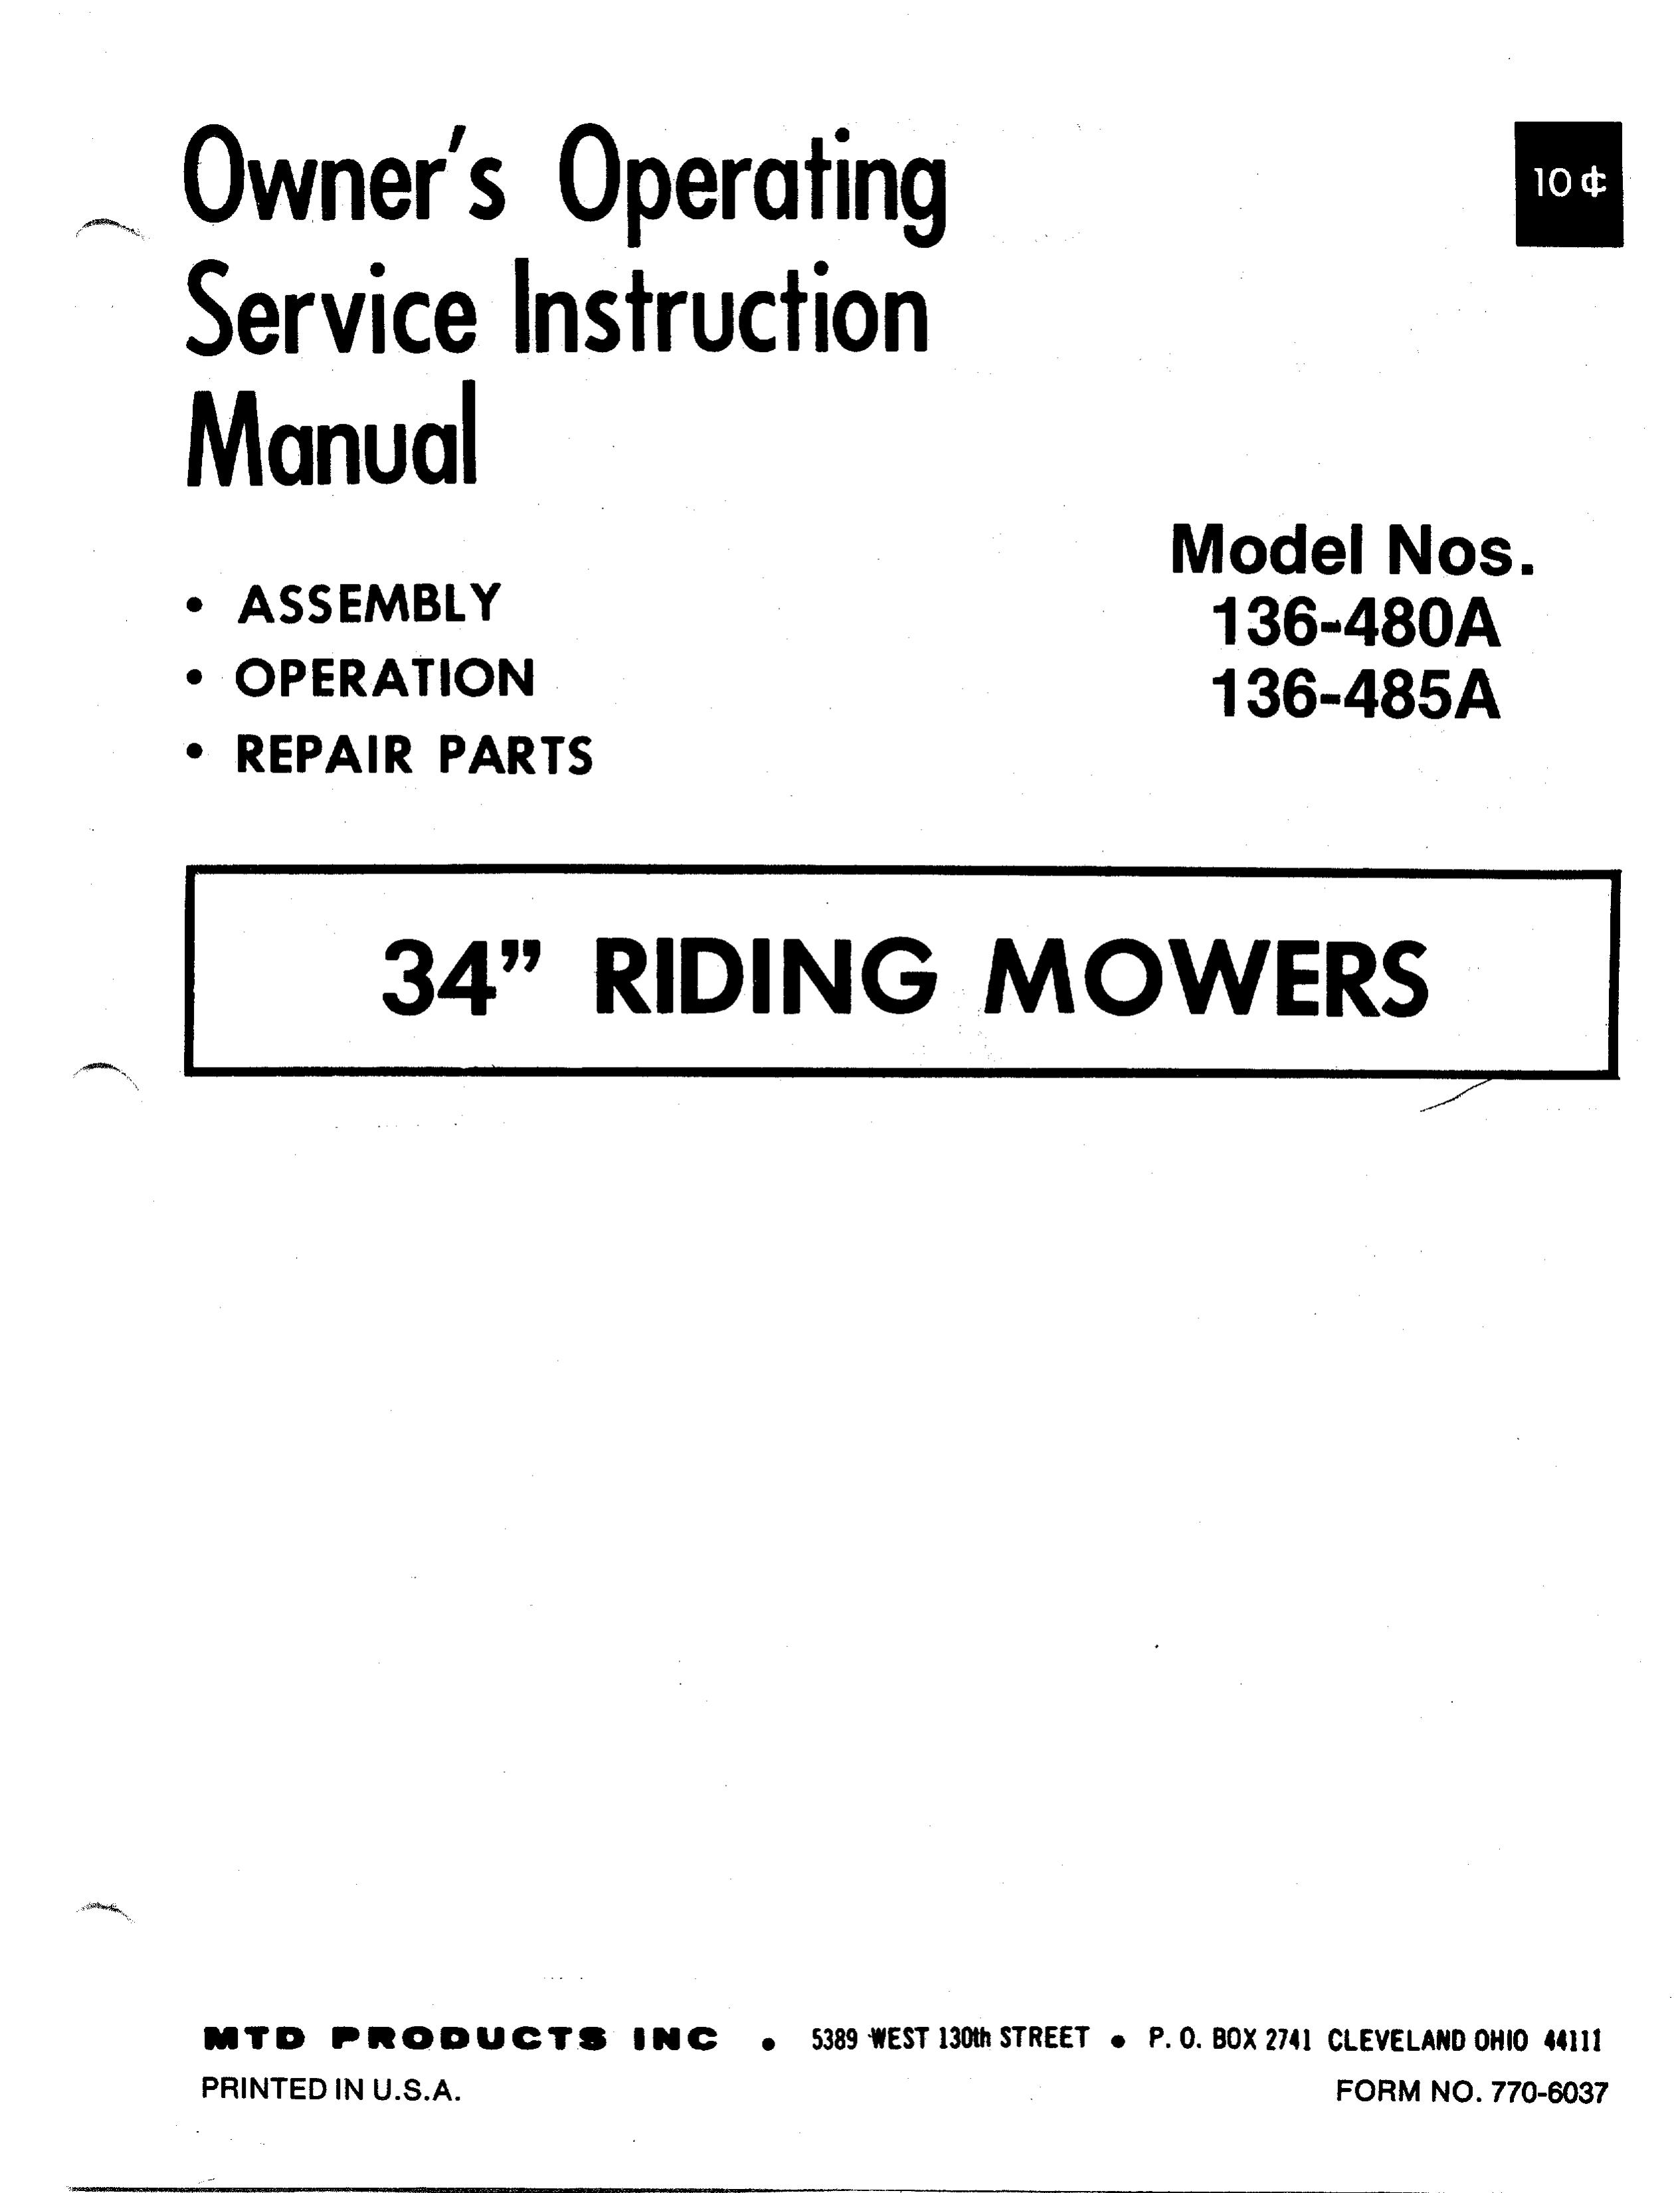 Asus 136-485A Lawn Mower User Manual